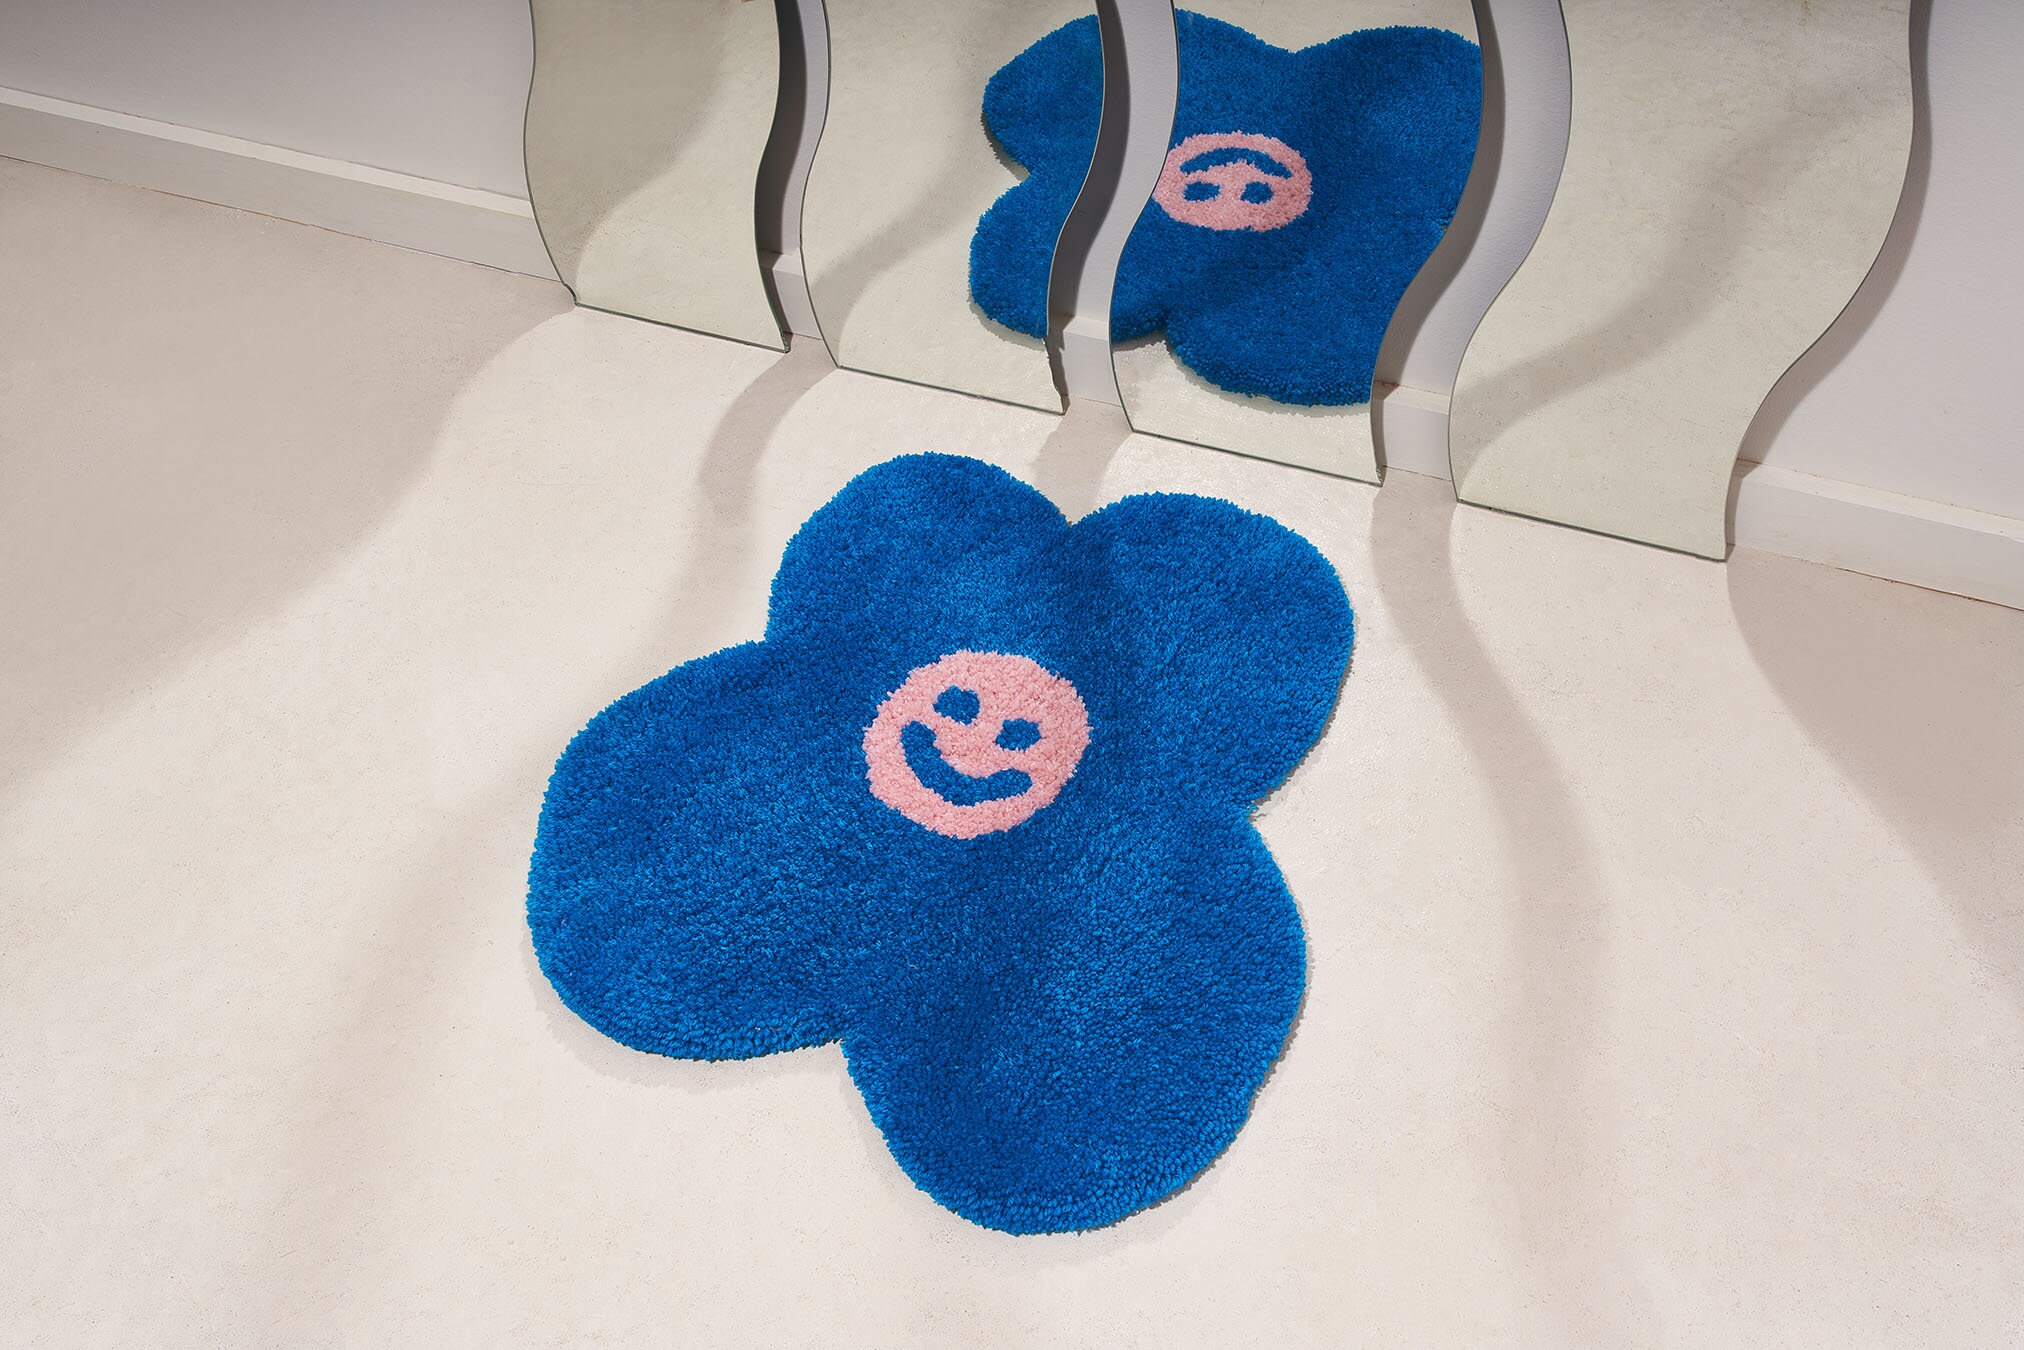 Happy Face Flower Rug - Tapis Bleu, Blush, d'accent Smiley Face, Touffeté, Cadeau Unique, Pour Une F